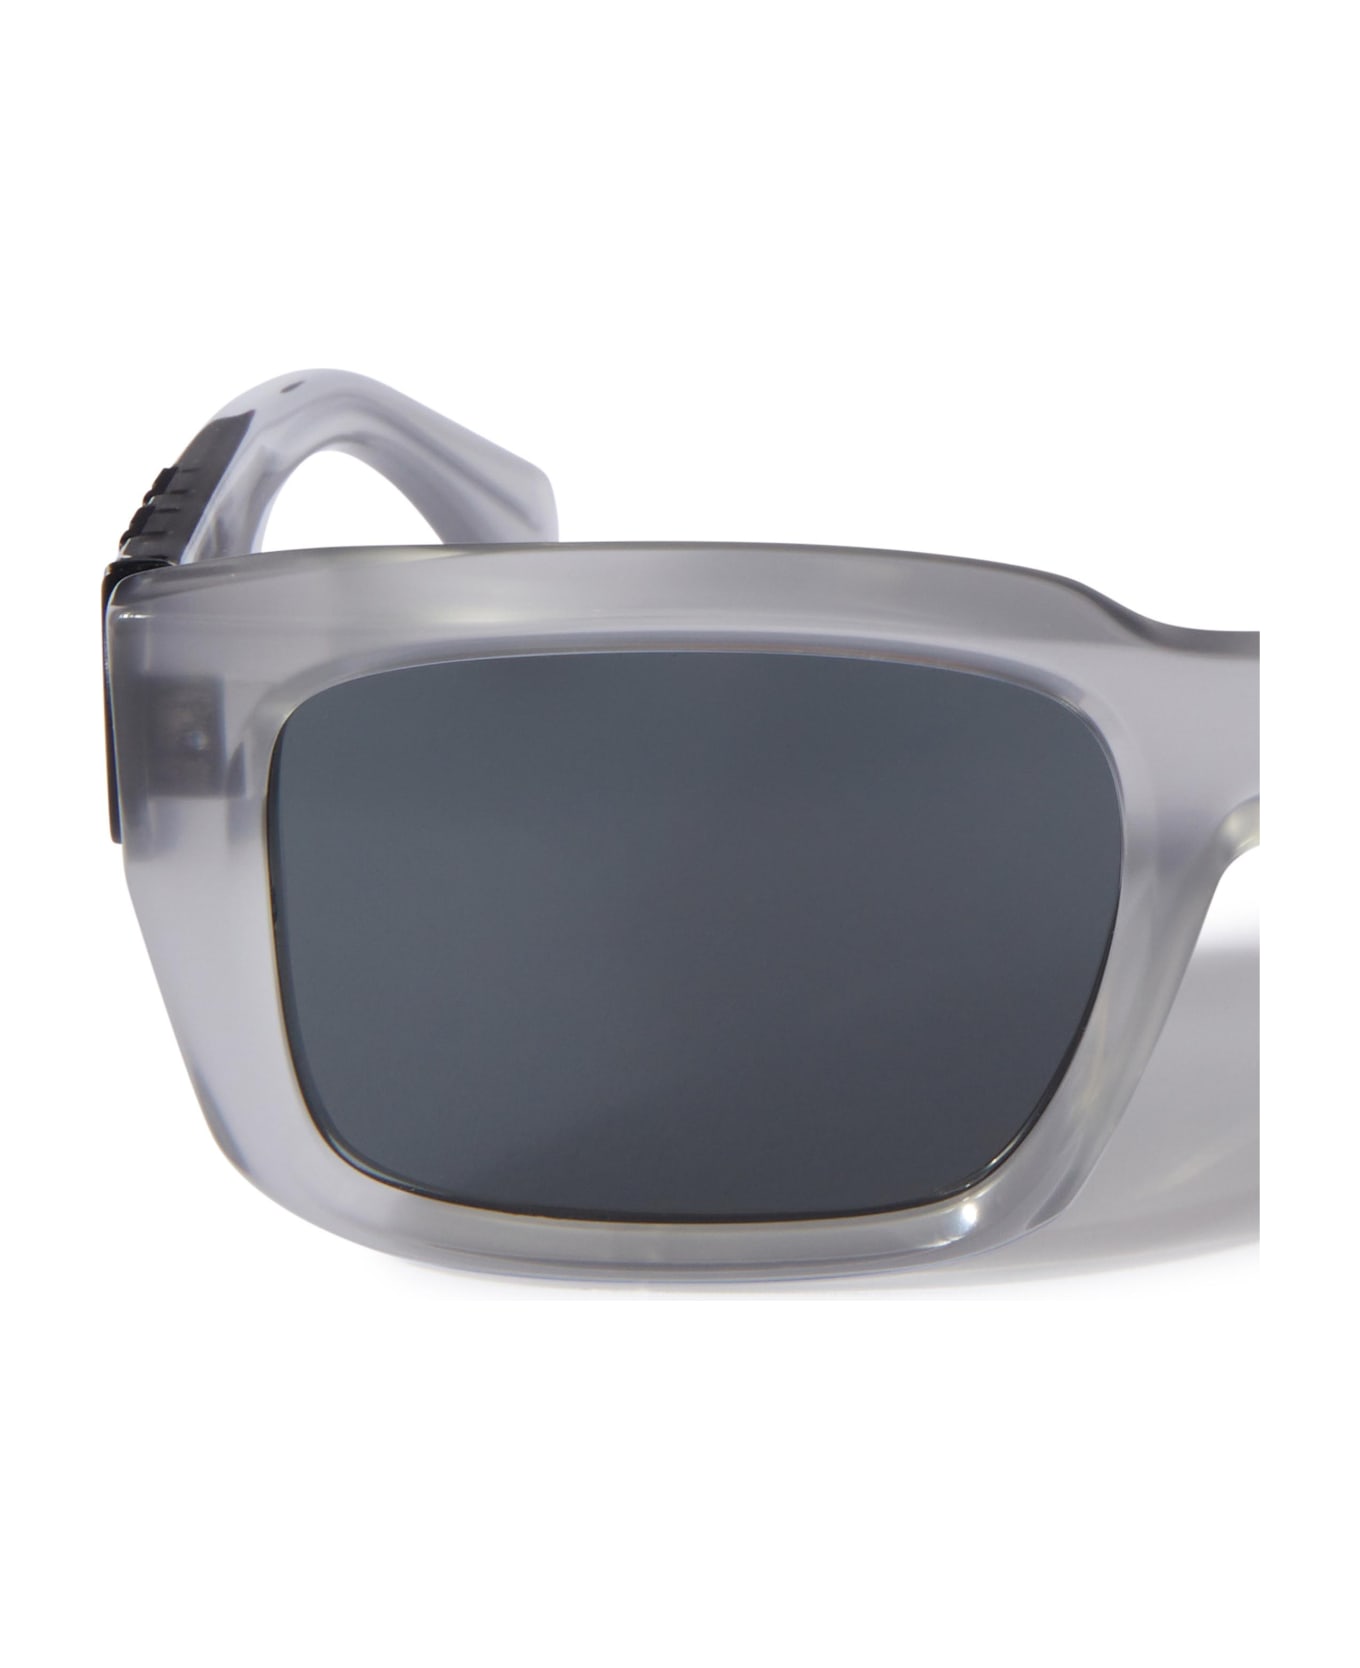 Off-White Sunglasses - Grigio/Grigio サングラス